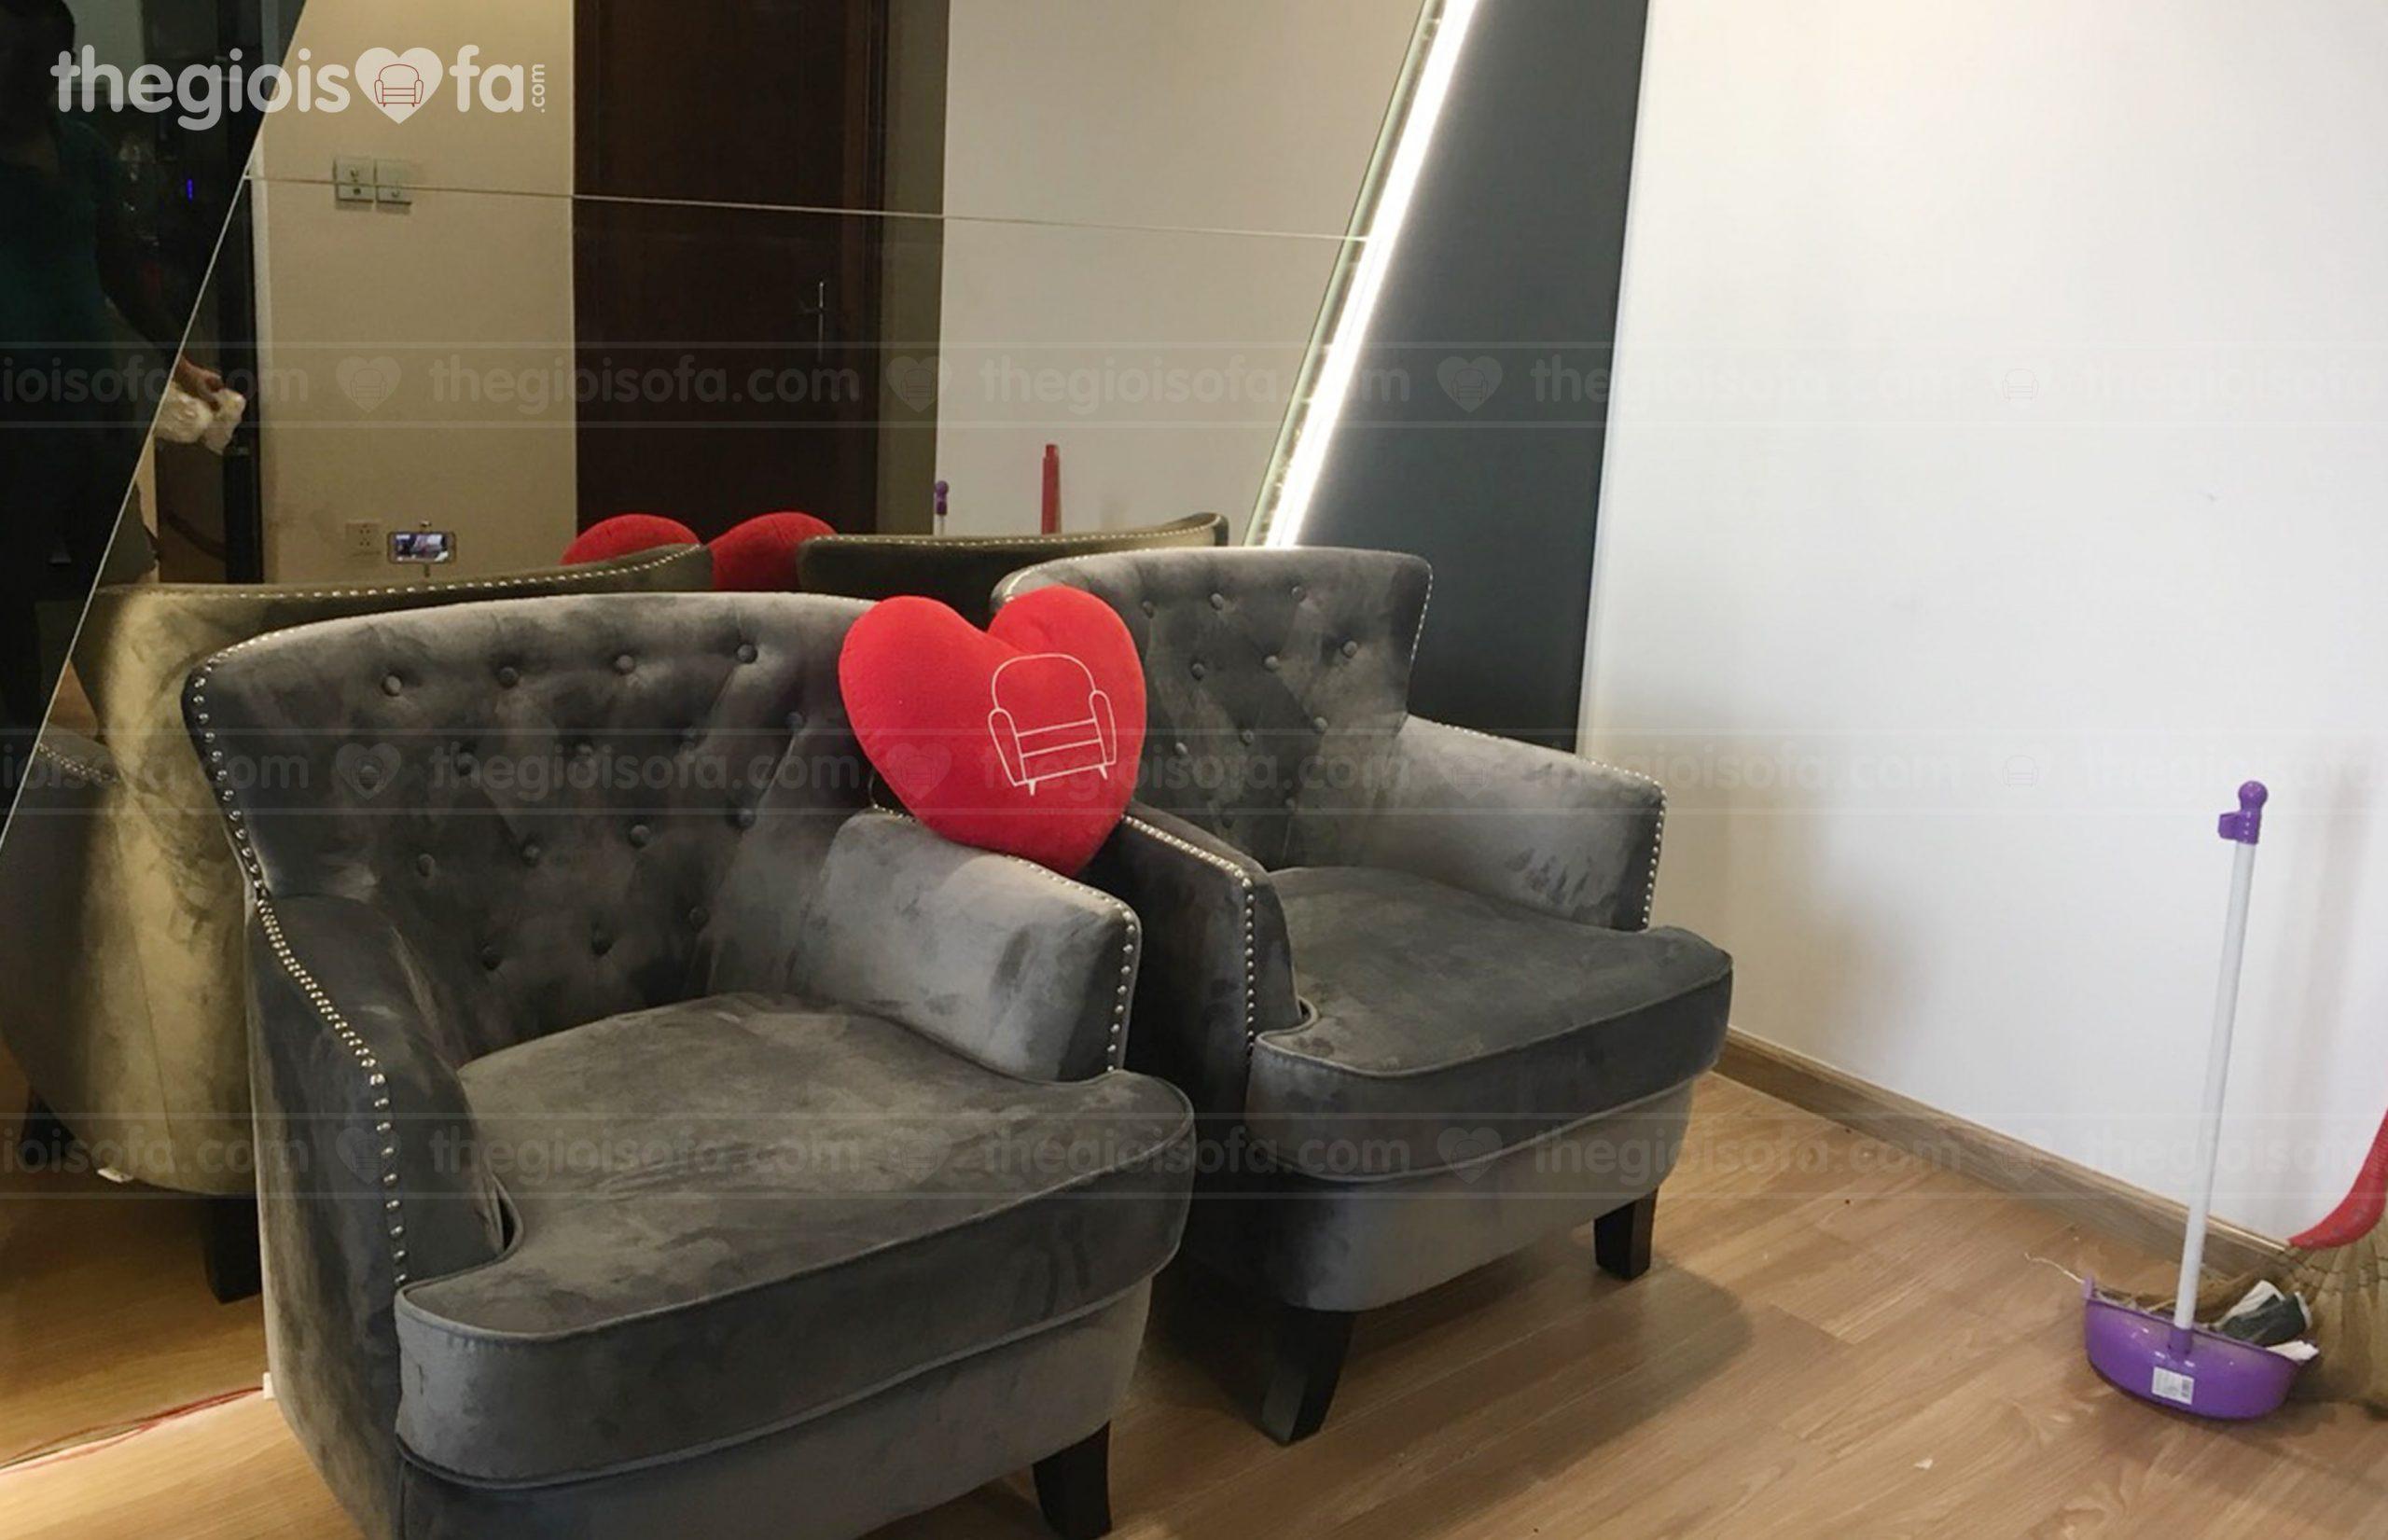 Giao hàng combo 2 ghế sofa đơn Stella cho anh Thuấn tại Park 9 Tòa Times City – Minh Khai – Hai Bà Trưng – Hà Nội